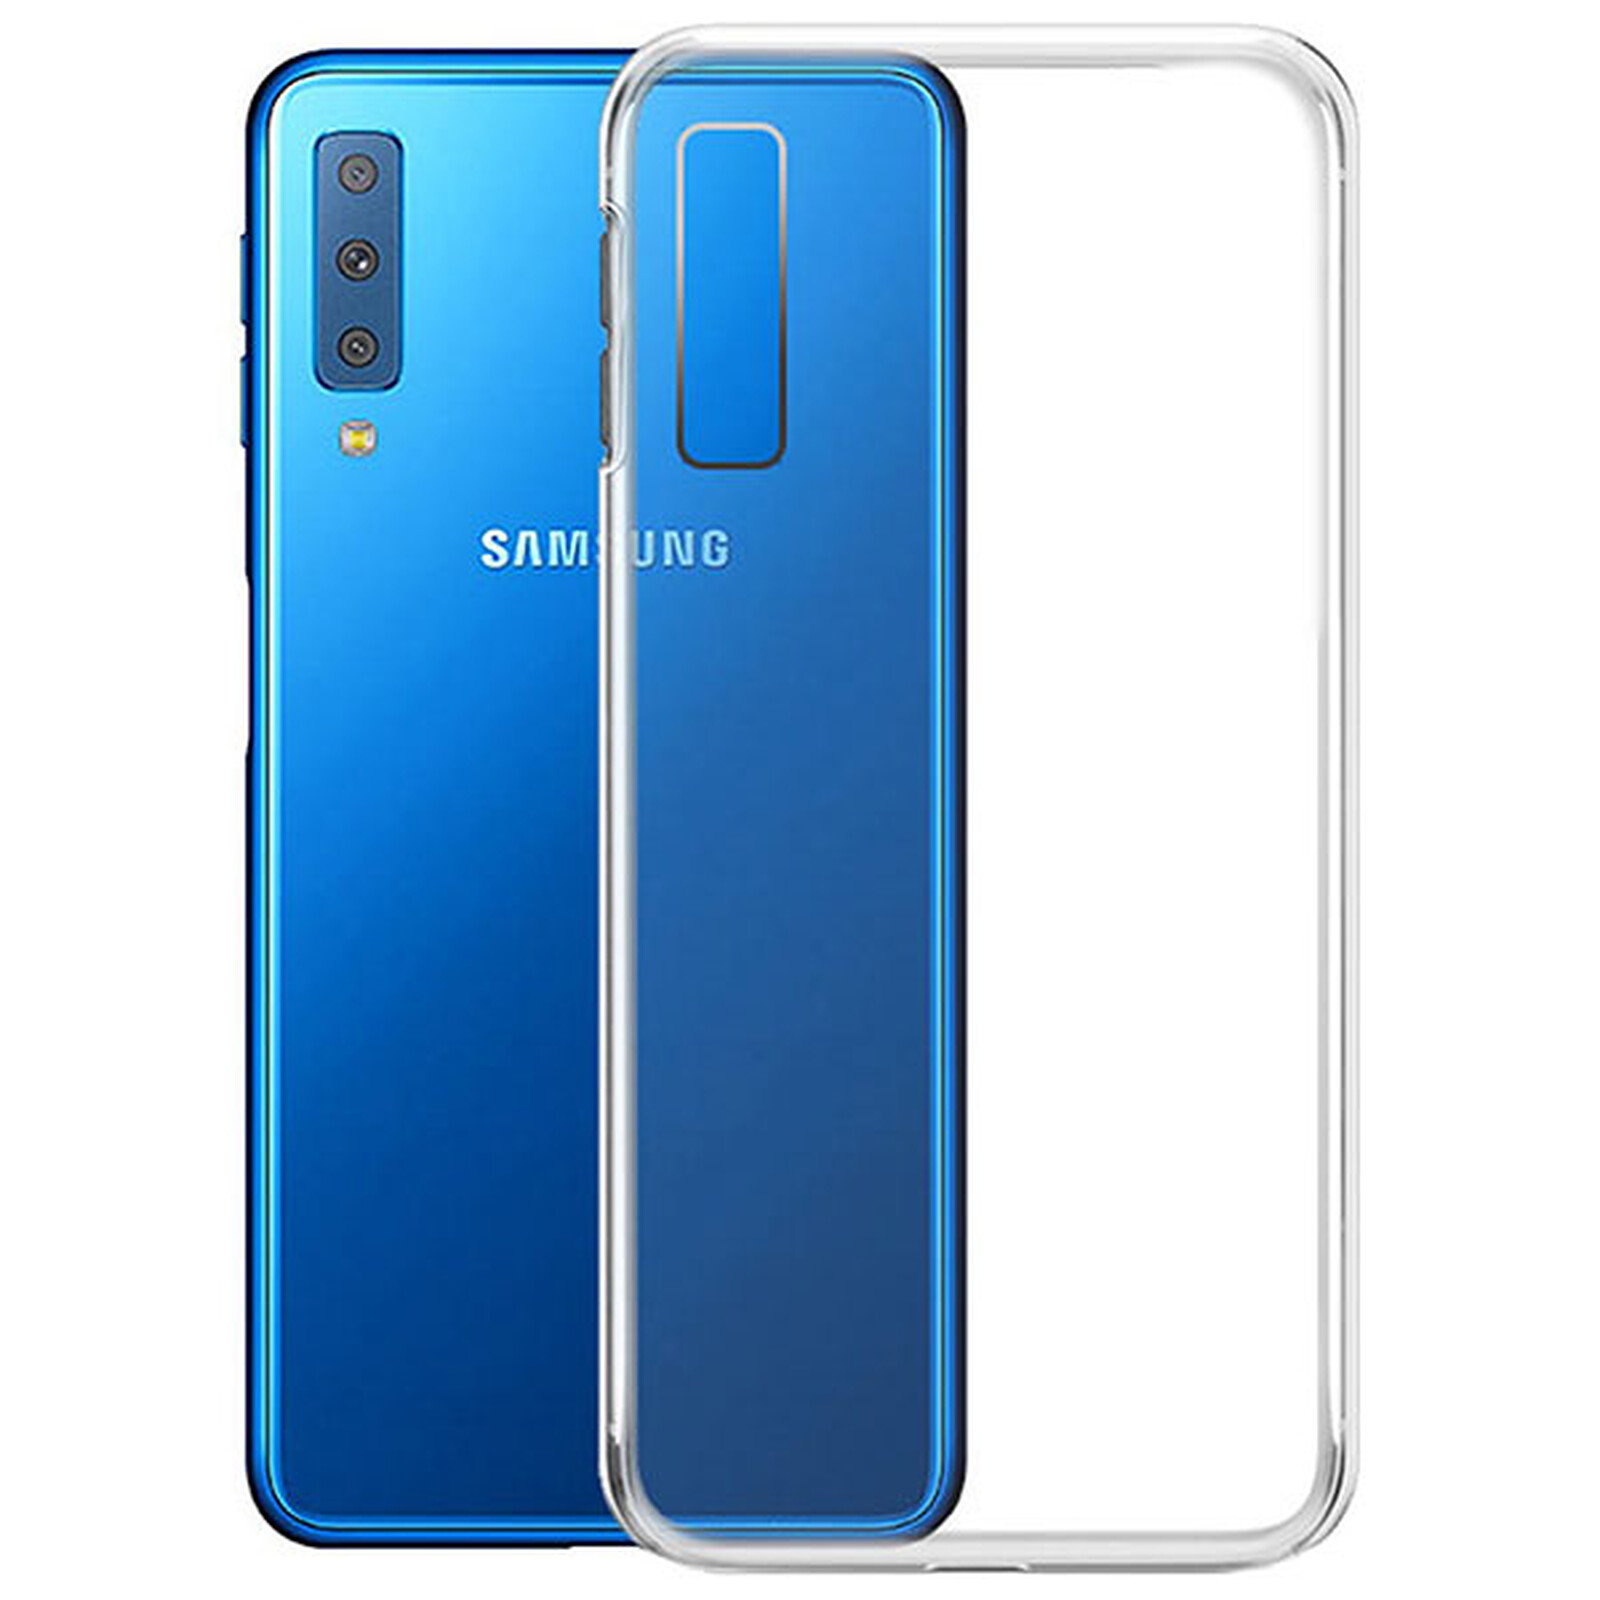 Color:Bleu Profond XXIAZHI,Coque Mobile TPU Pure Color pour Samsung Galaxy A7 2018 